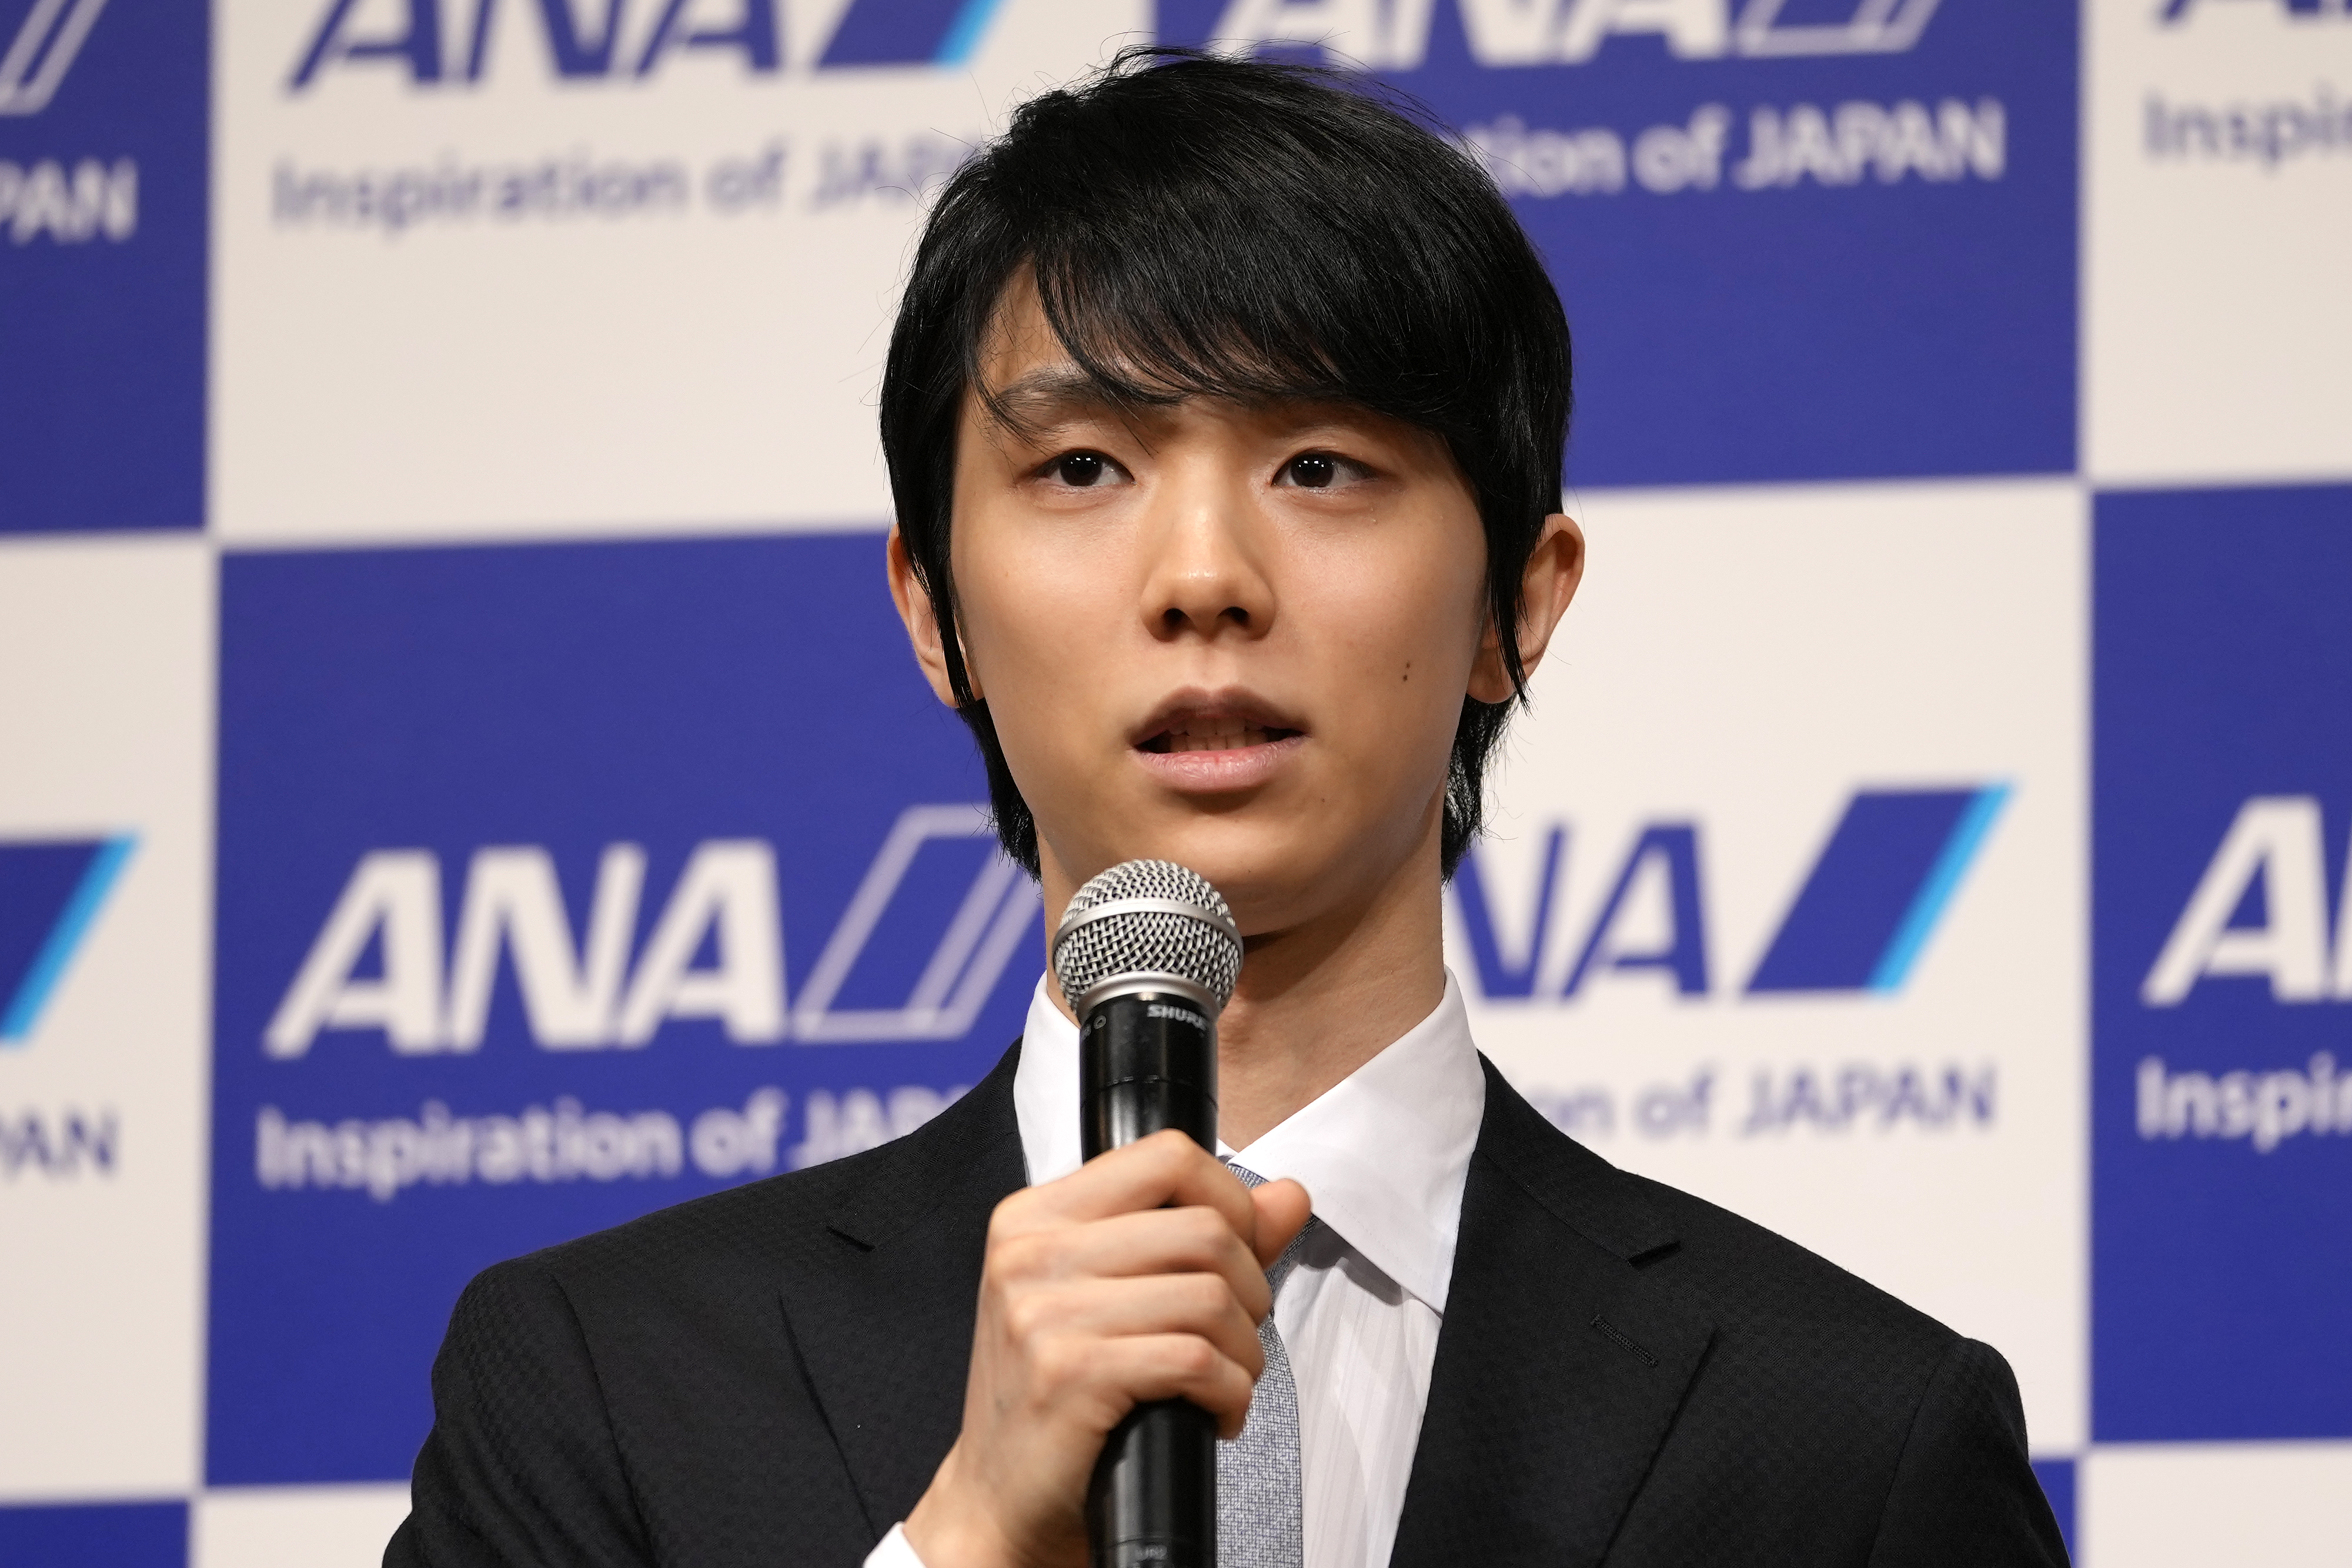 동계올림픽 피겨스케이팅 종목 2연패의 주인공인 하뉴 유즈루가 19일 일본 도쿄에서 기자회견을 열고 프로 아이스쇼 선수로 전향하겠다는 뜻을 밝히고 있다. 도쿄 AP 뉴시스